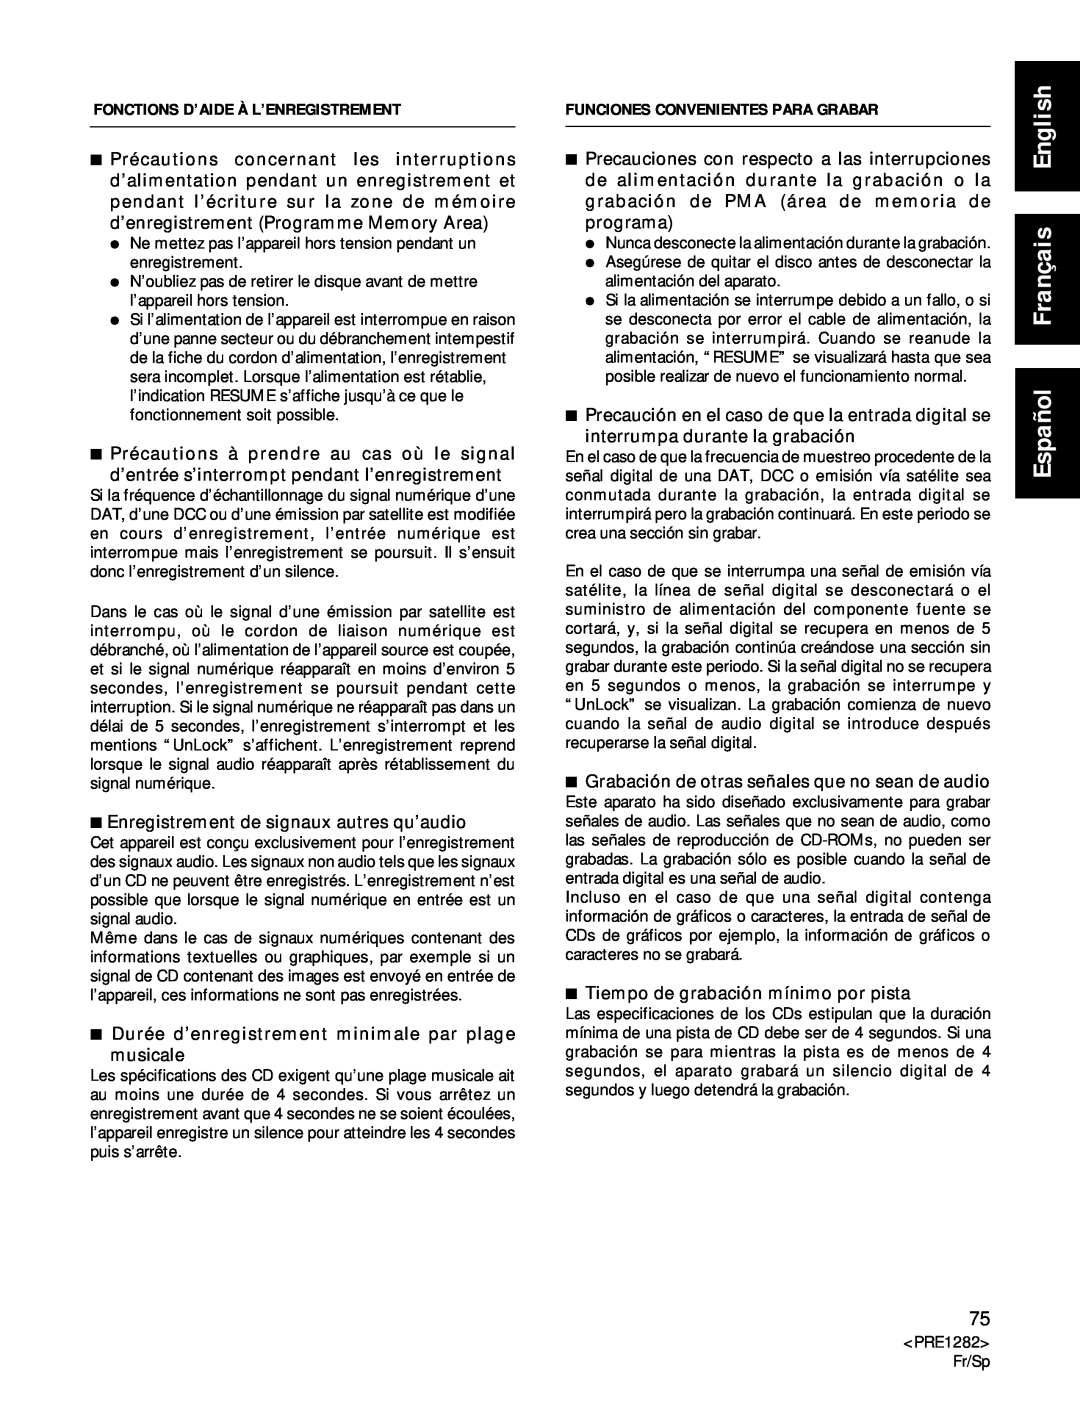 Americana Appliances CDR-850 manual Español Français English, Fonctions D’Aide À L’Enregistrement 